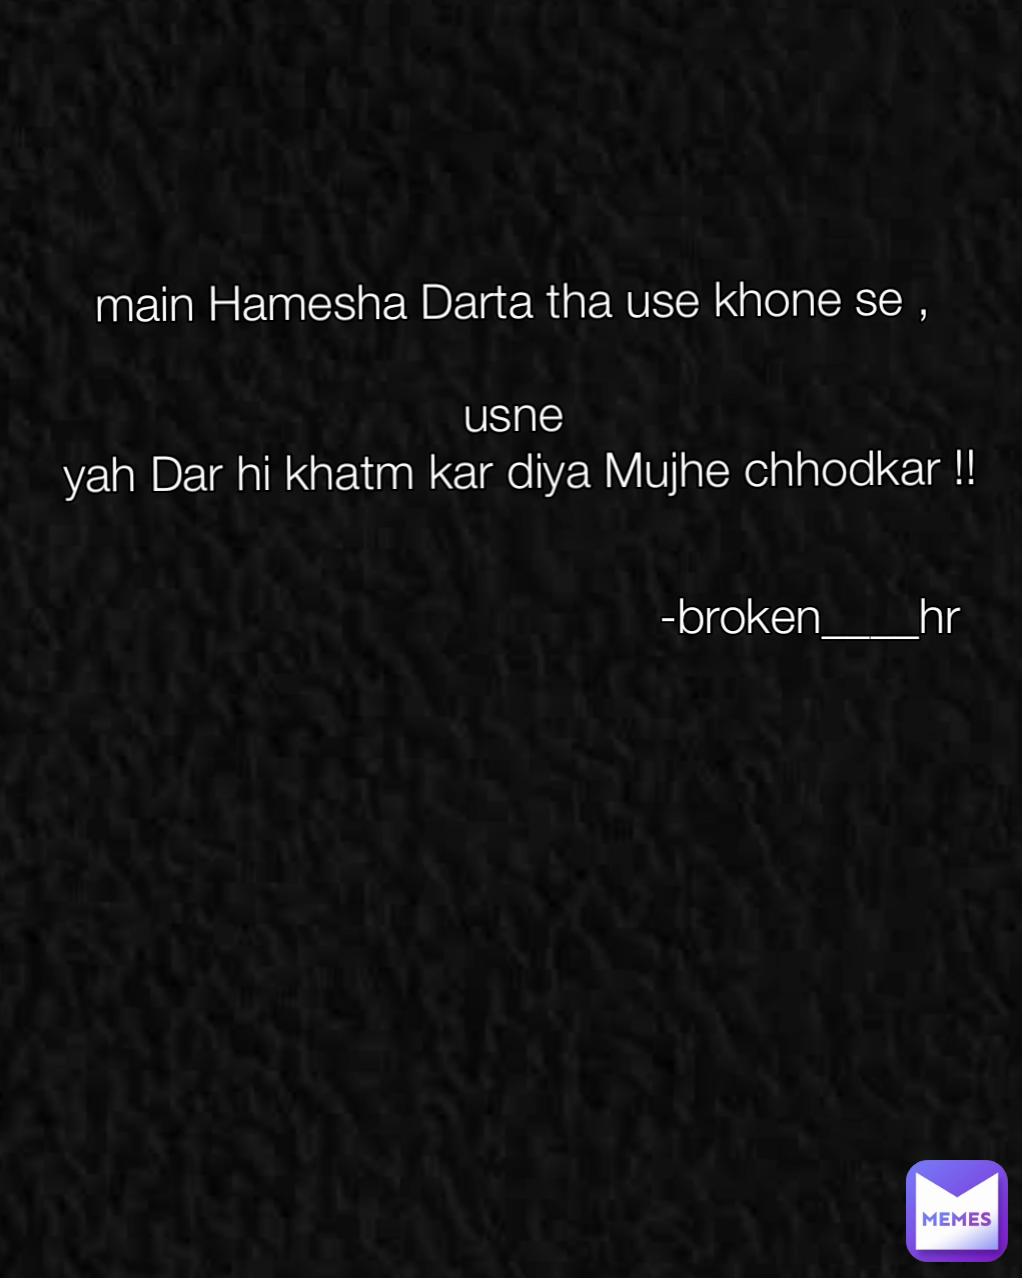 -broken____hr main Hamesha Darta tha use khone se ,

usne
 yah Dar hi khatm kar diya Mujhe chhodkar !!